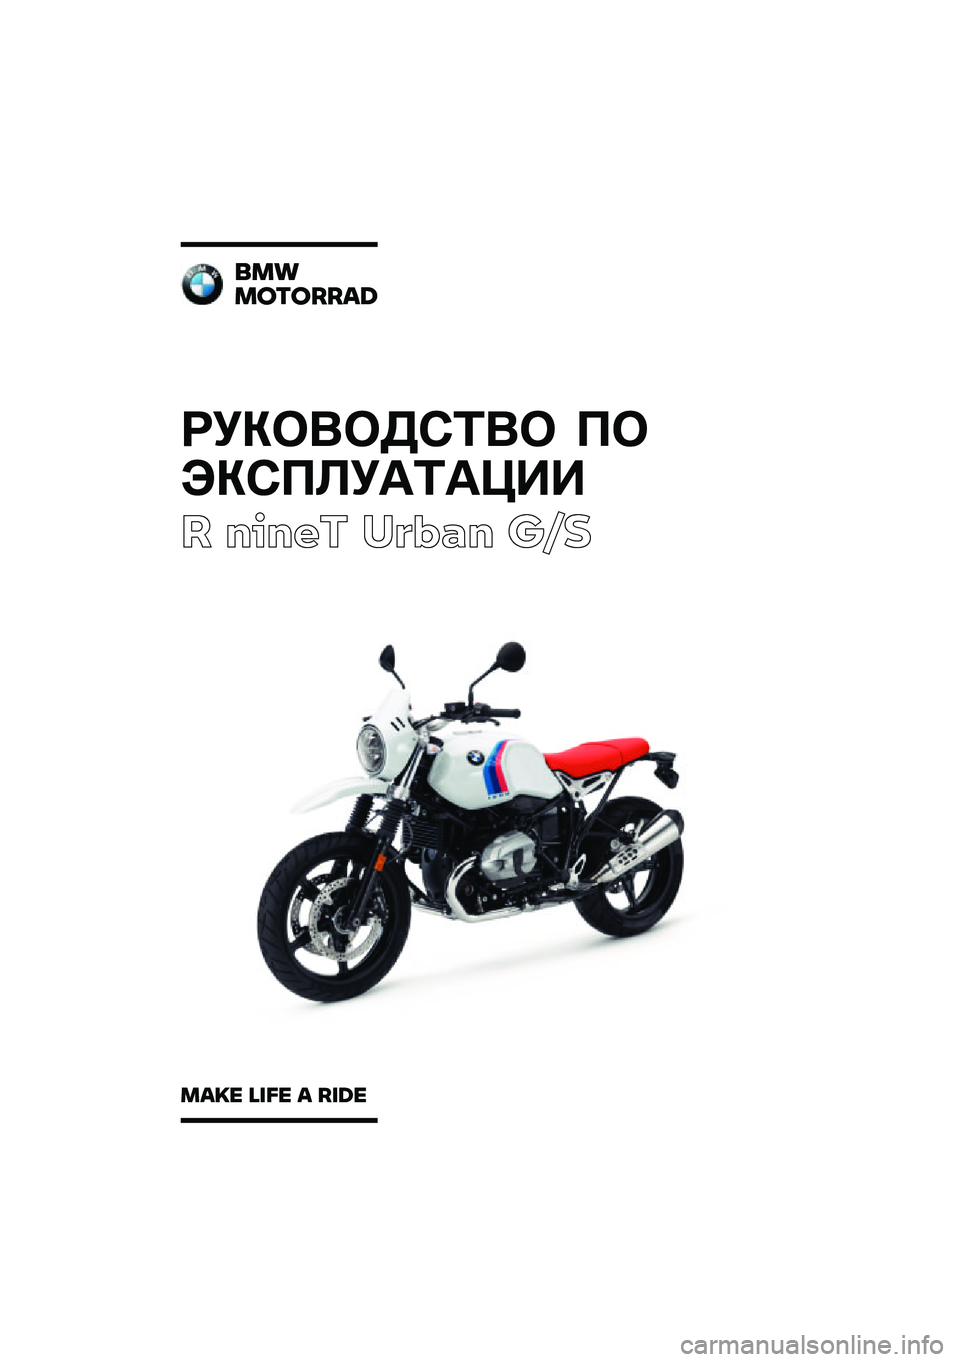 BMW MOTORRAD R NINE T URVAN G/S 2020  Руководство по эксплуатации (in Russian) ��������\b�	�� �
�
���\b�
�\f��
�	�
���
� ����� ��\b�	�
� ��\f�
���
�������\b�	
��\b�
� �\f�
�� �\b ��
�	� 